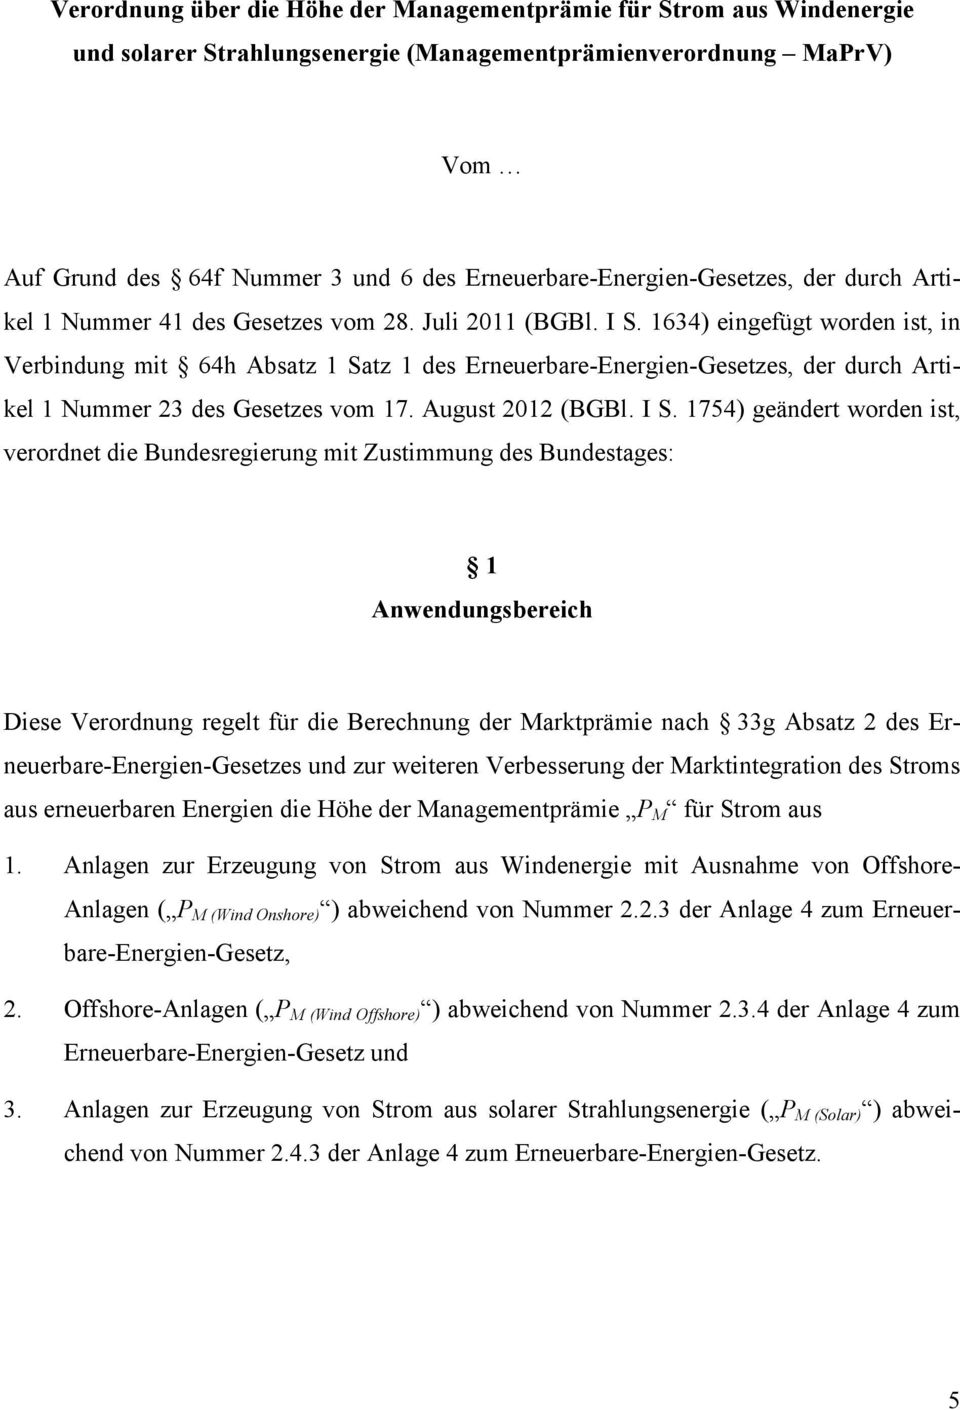 1634) eingefügt worden ist, in Verbindung mit 64h Absatz 1 Satz 1 des Erneuerbare-Energien-Gesetzes, der durch Artikel 1 Nummer 23 des Gesetzes vom 17. August 2012 (BGBl. I S.